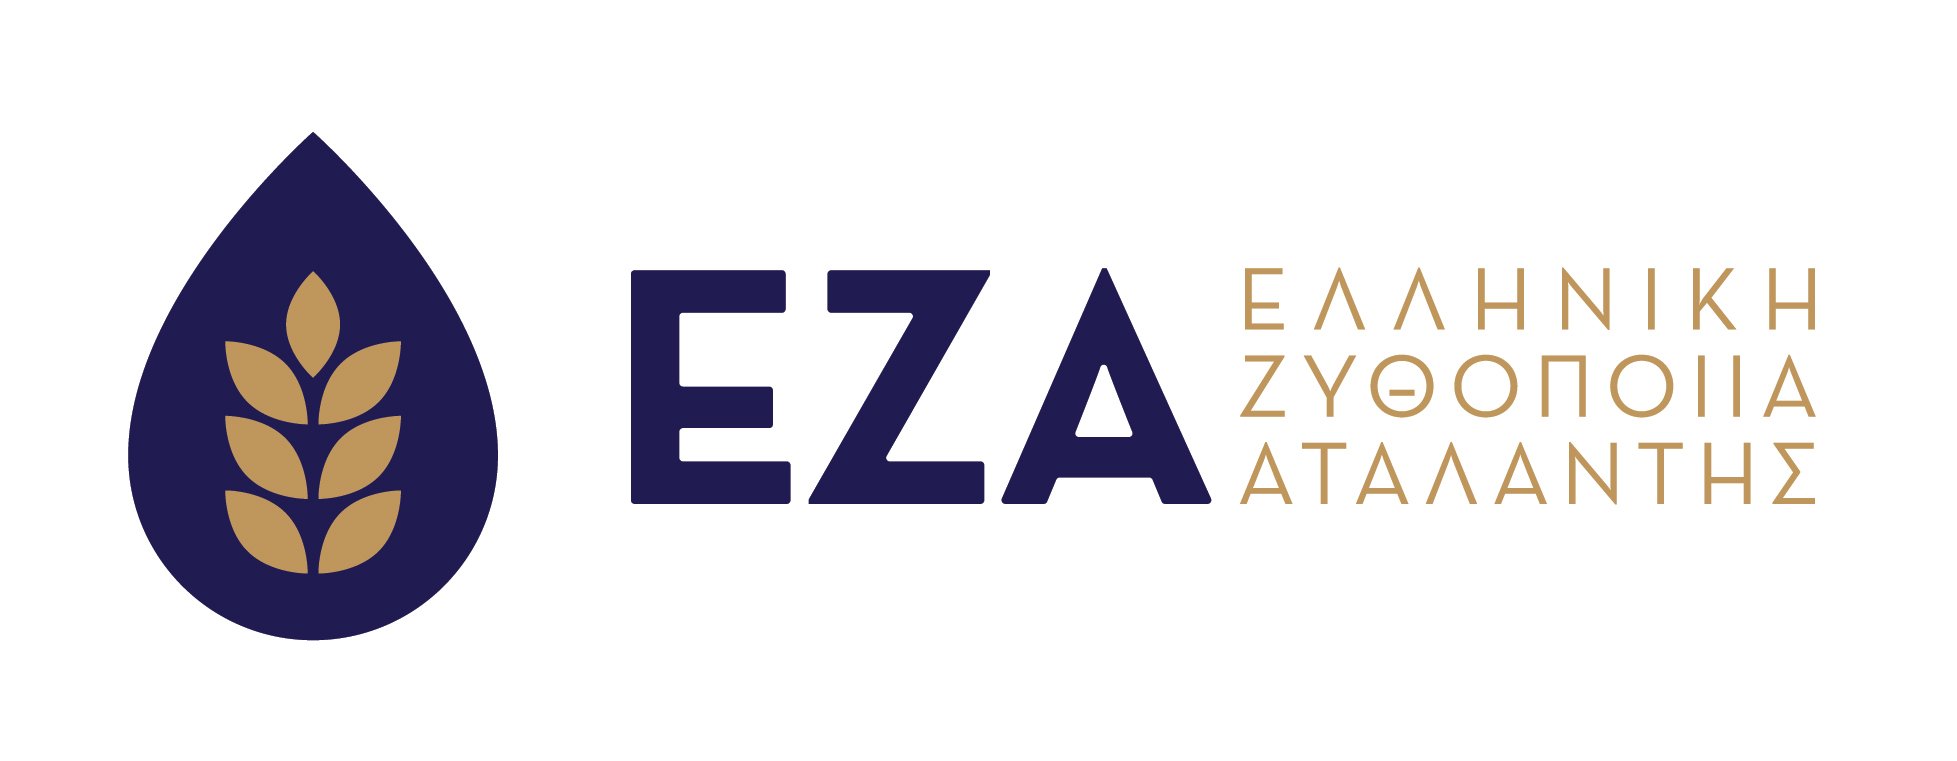 elliniki_zythopoiia_atalantis_logo.jpg